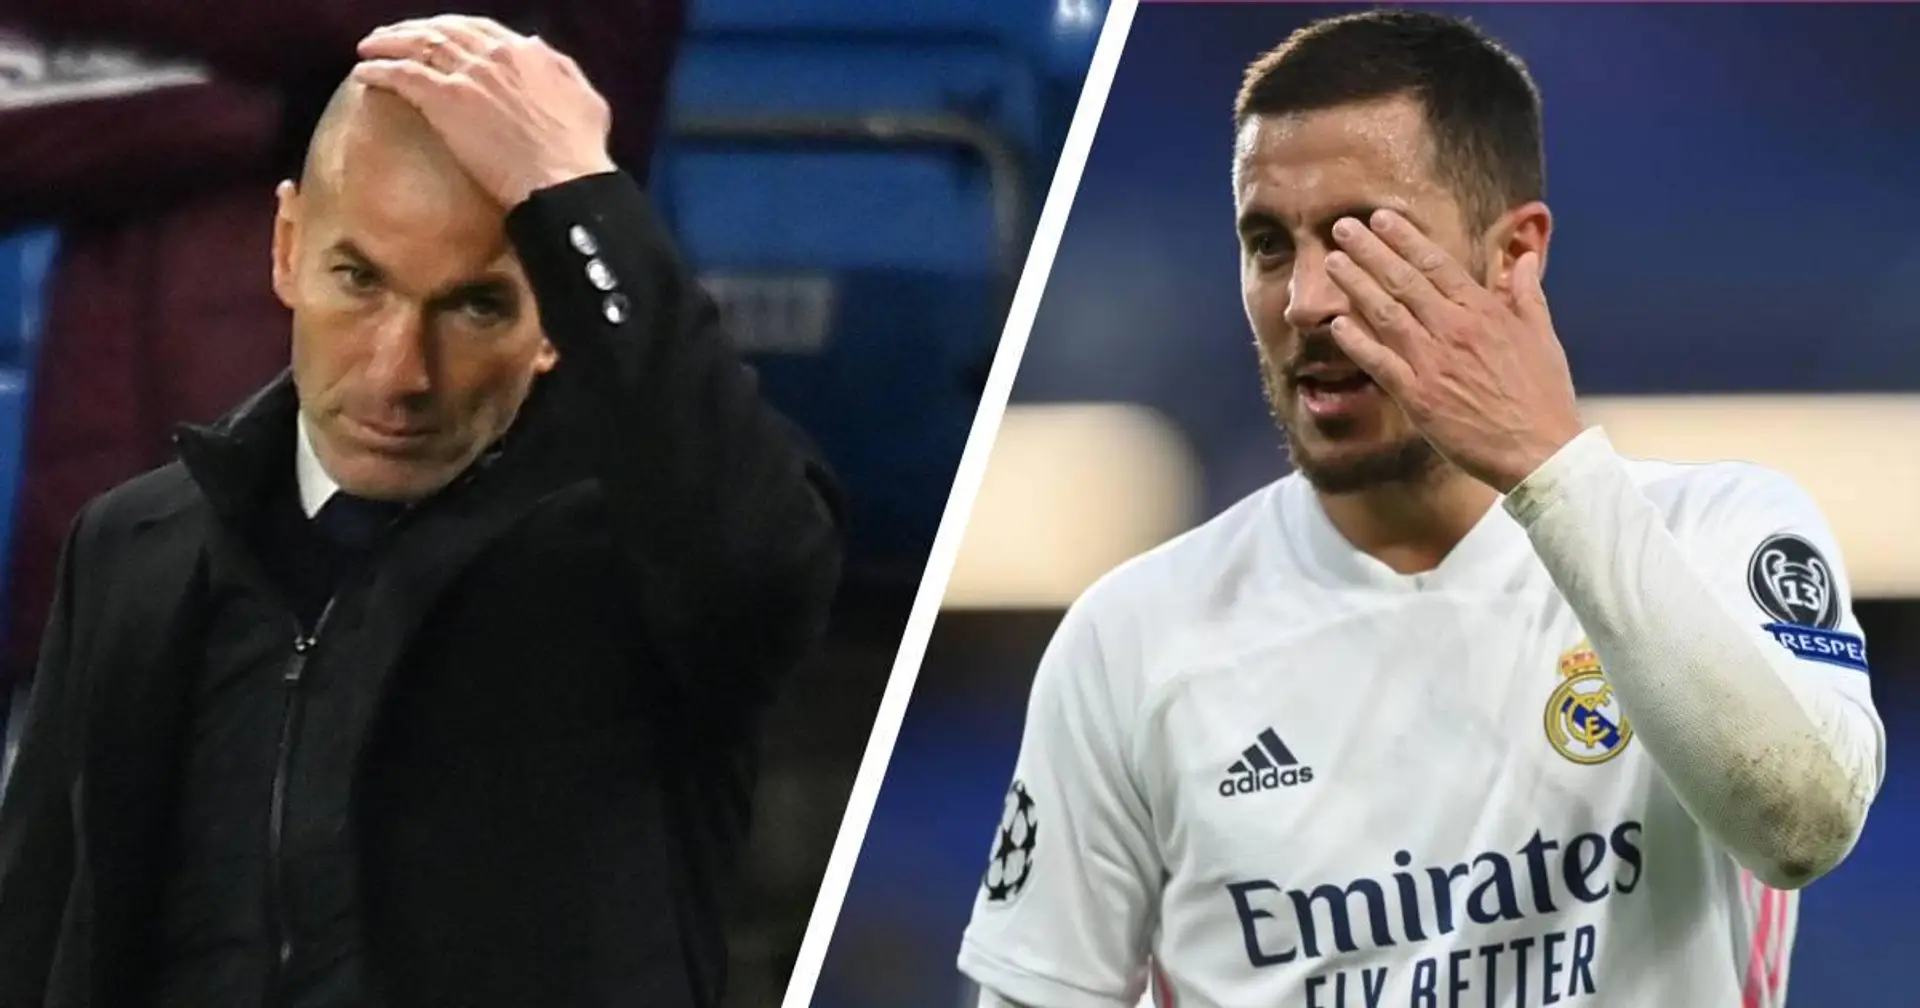 Vinicius de lateral, Hazard titular y más: clasificación de las decisiones de Zidane en la derrota ante el Chelsea